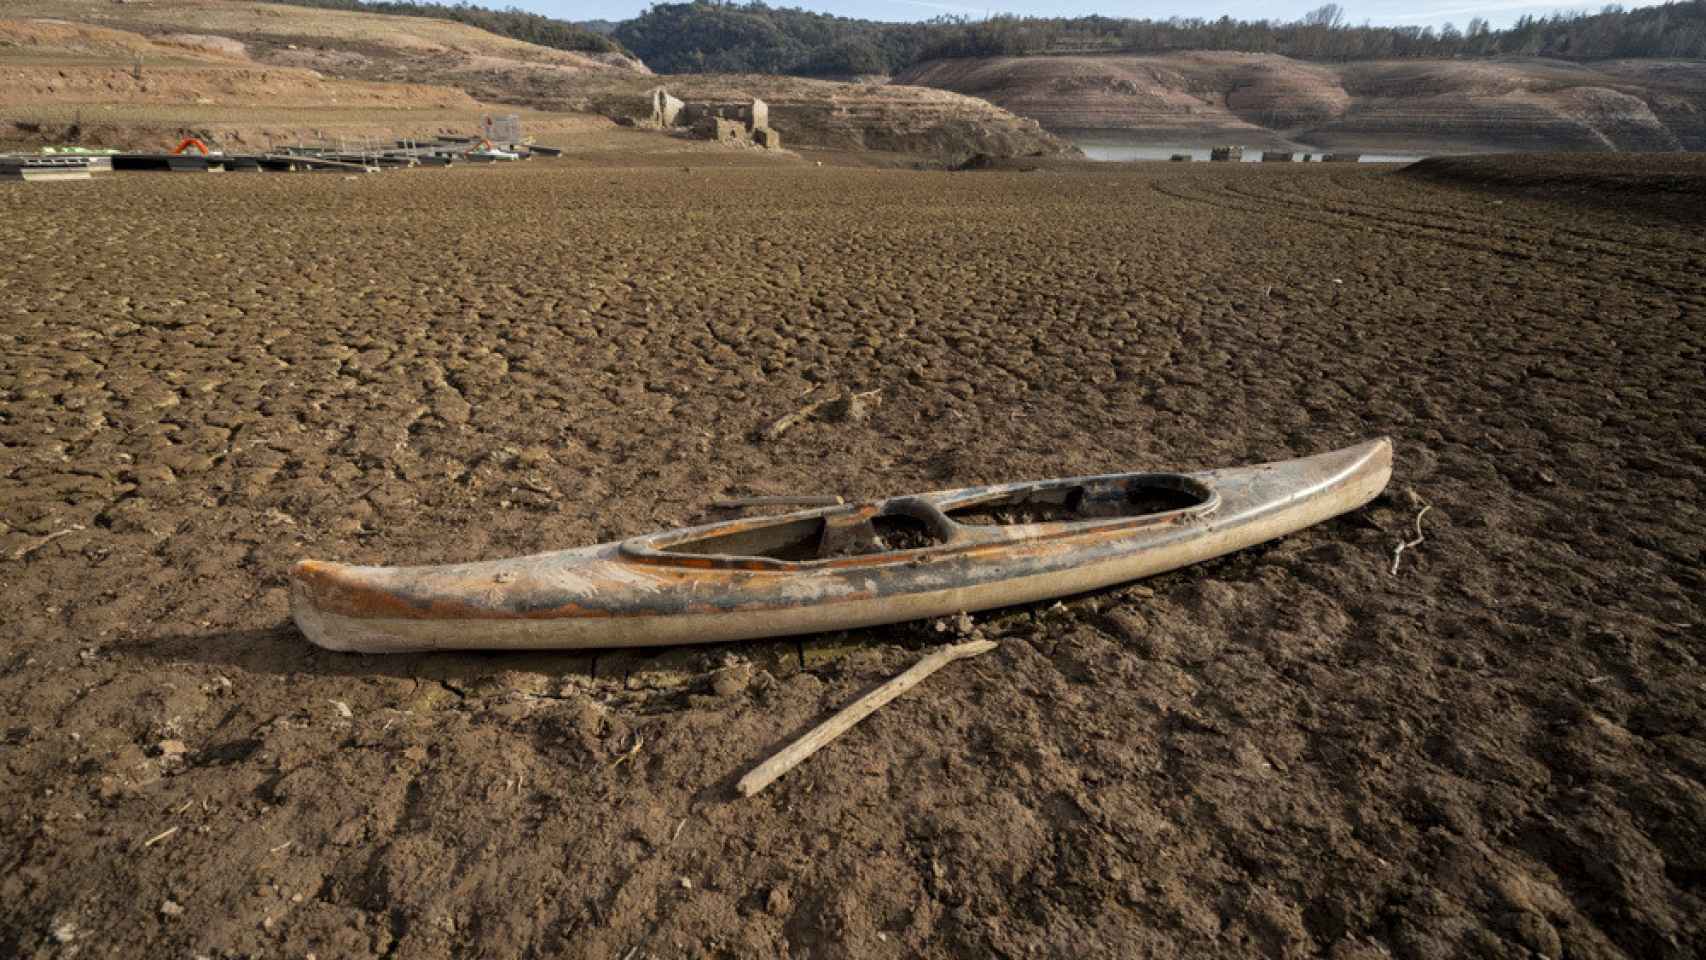 Una de las embarcaciones que se solían usar en el pantano de Sau antes de la sequía